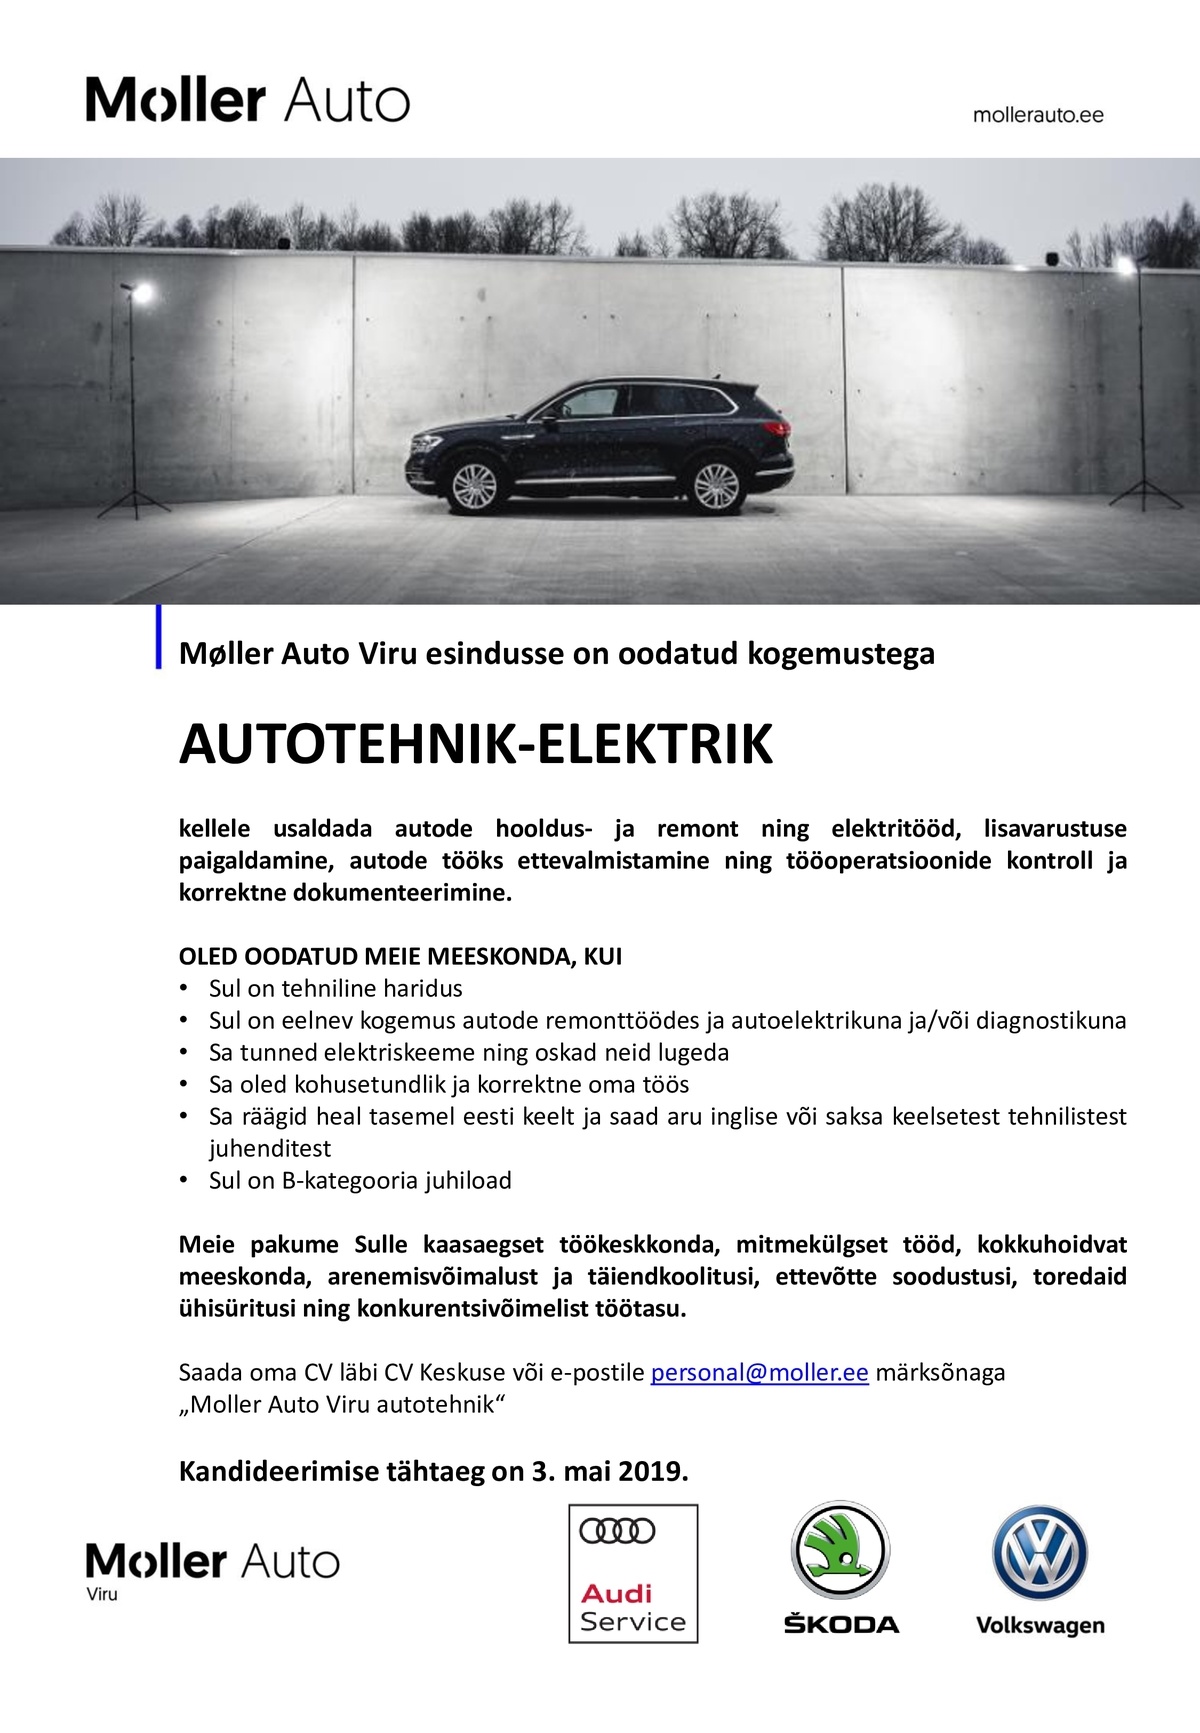 Moller Auto AUTOTEHNIK-ELEKTRIK